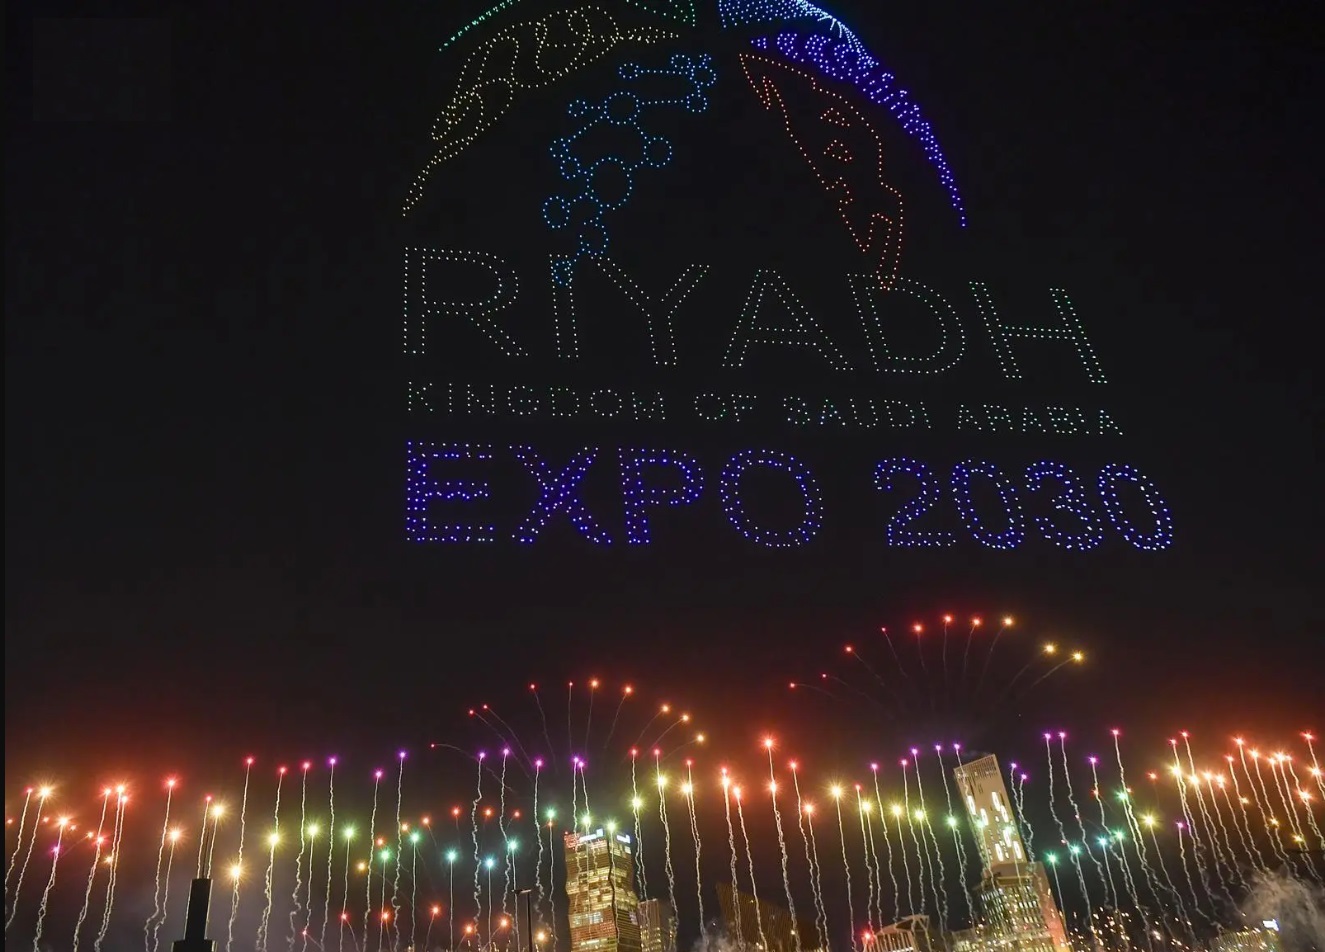 العالم يختار السعودية لاستضافة إكسبو 2030 بمدينة الرياض